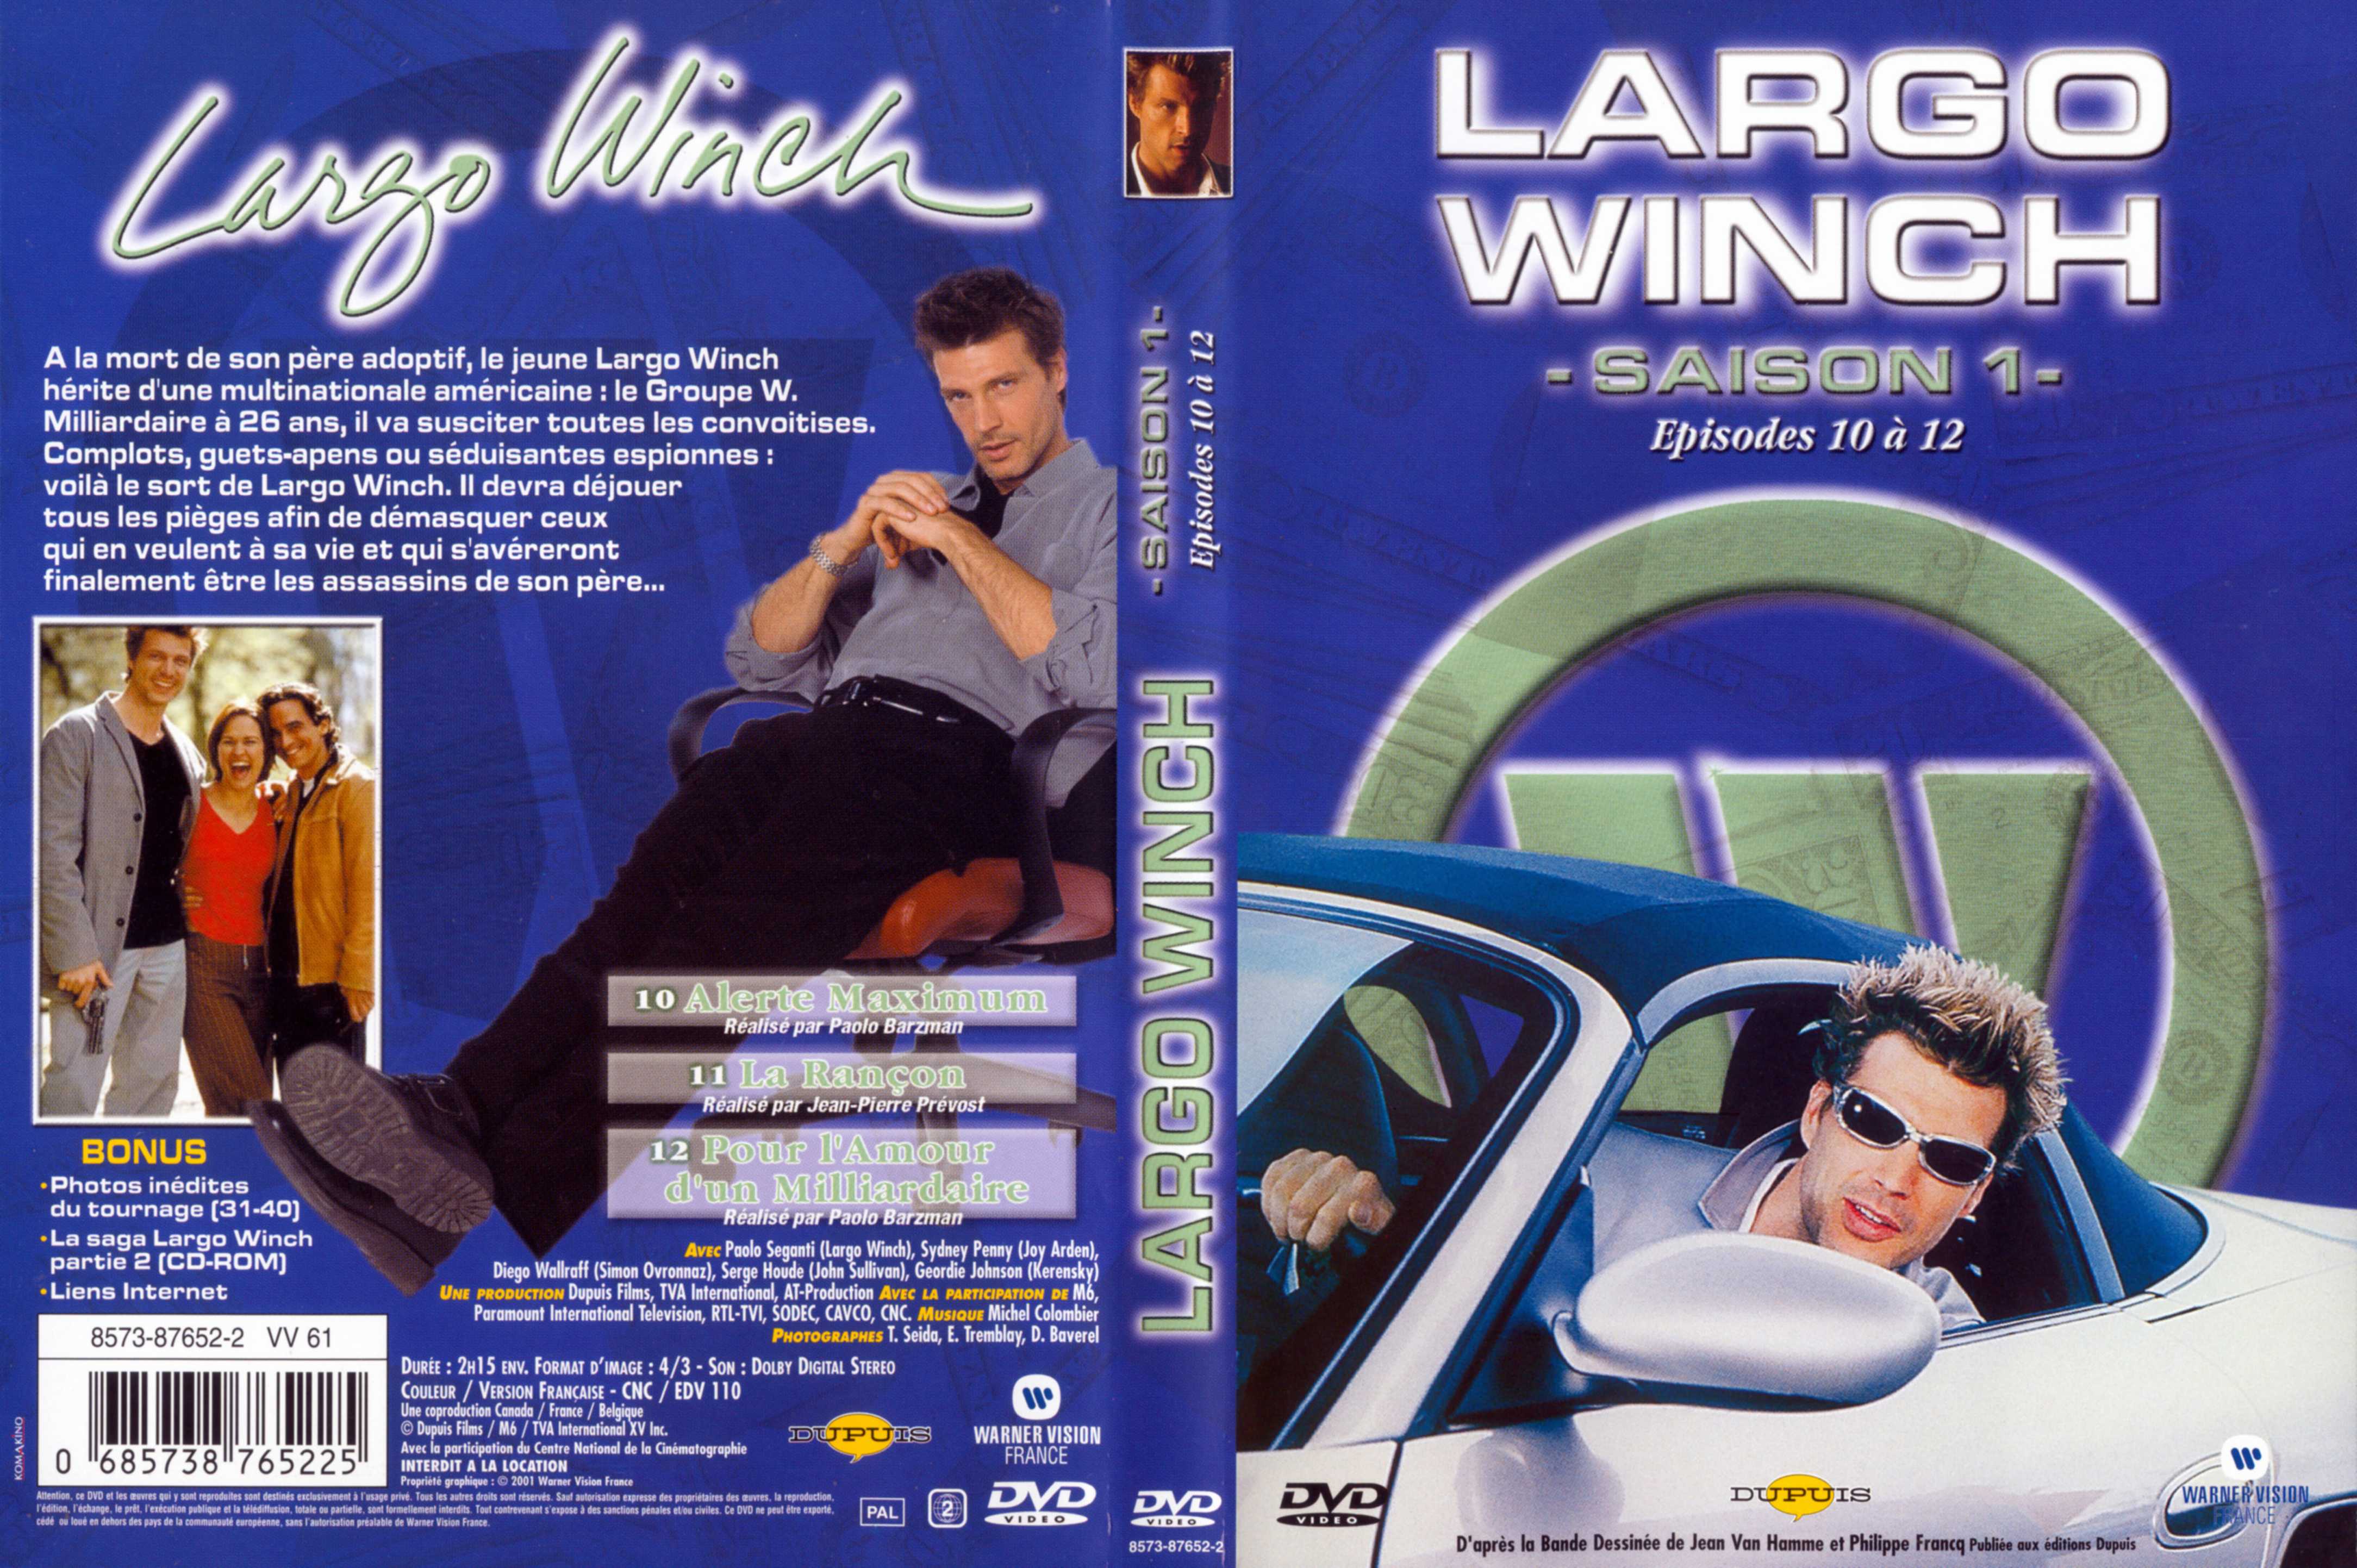 Jaquette DVD Largo Winch Saison 1 vol 04